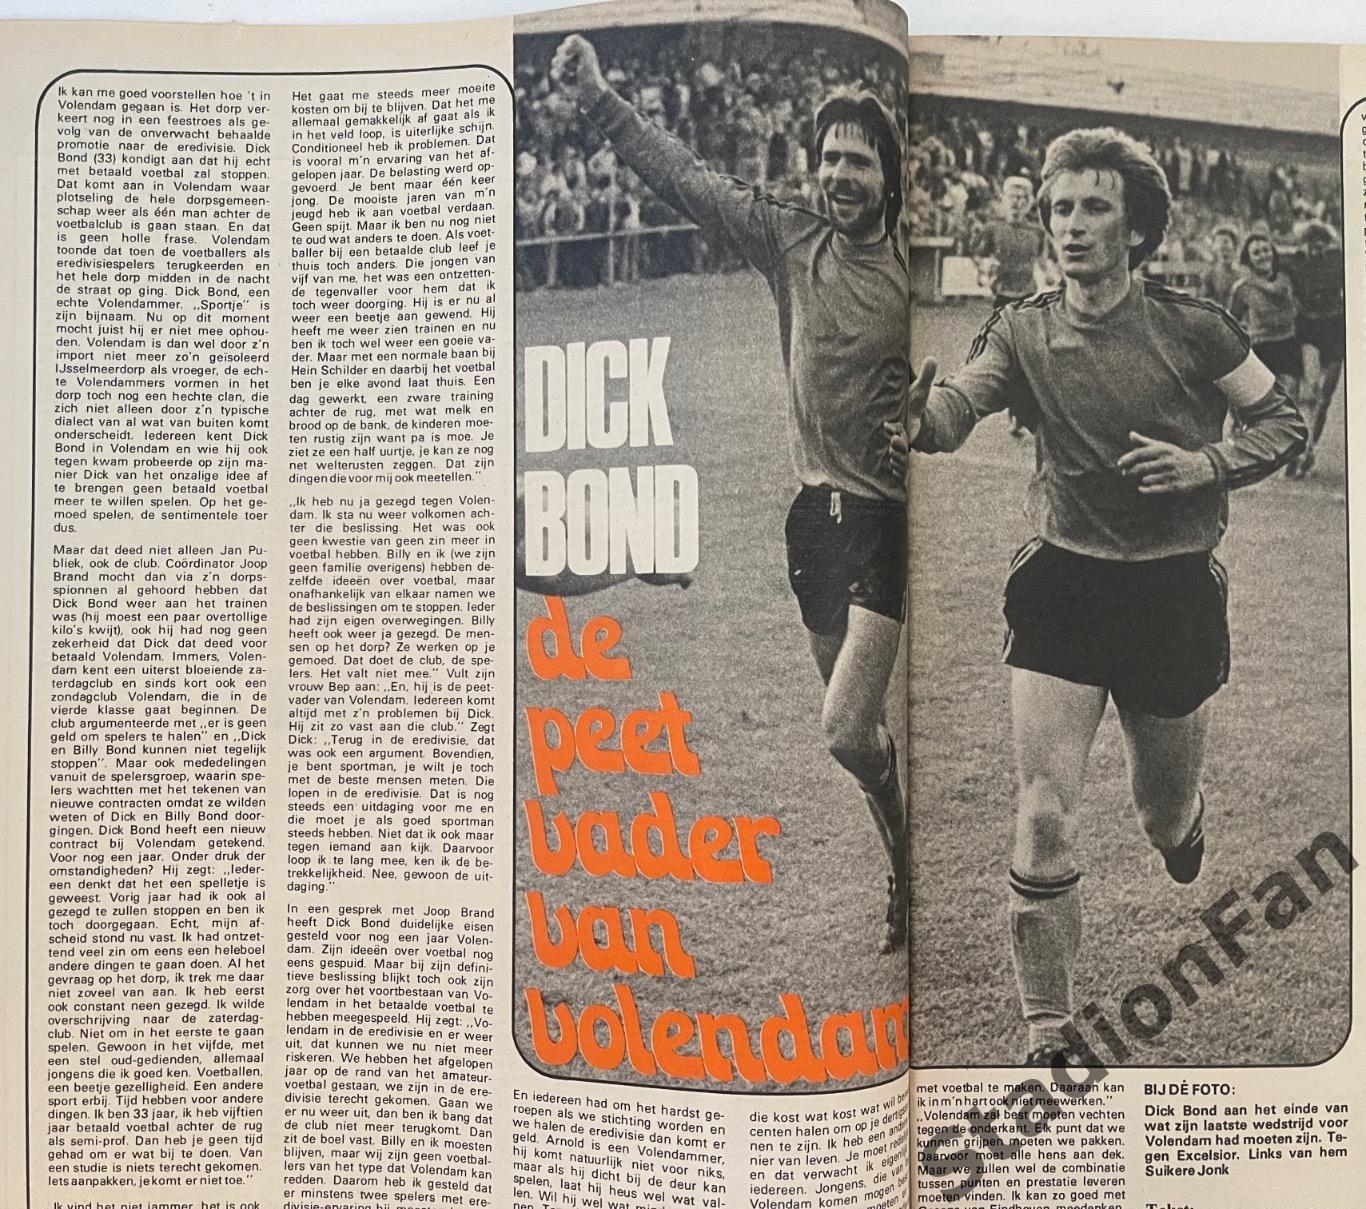 Журнал Voetbal nr.32 - 1977 год. 6